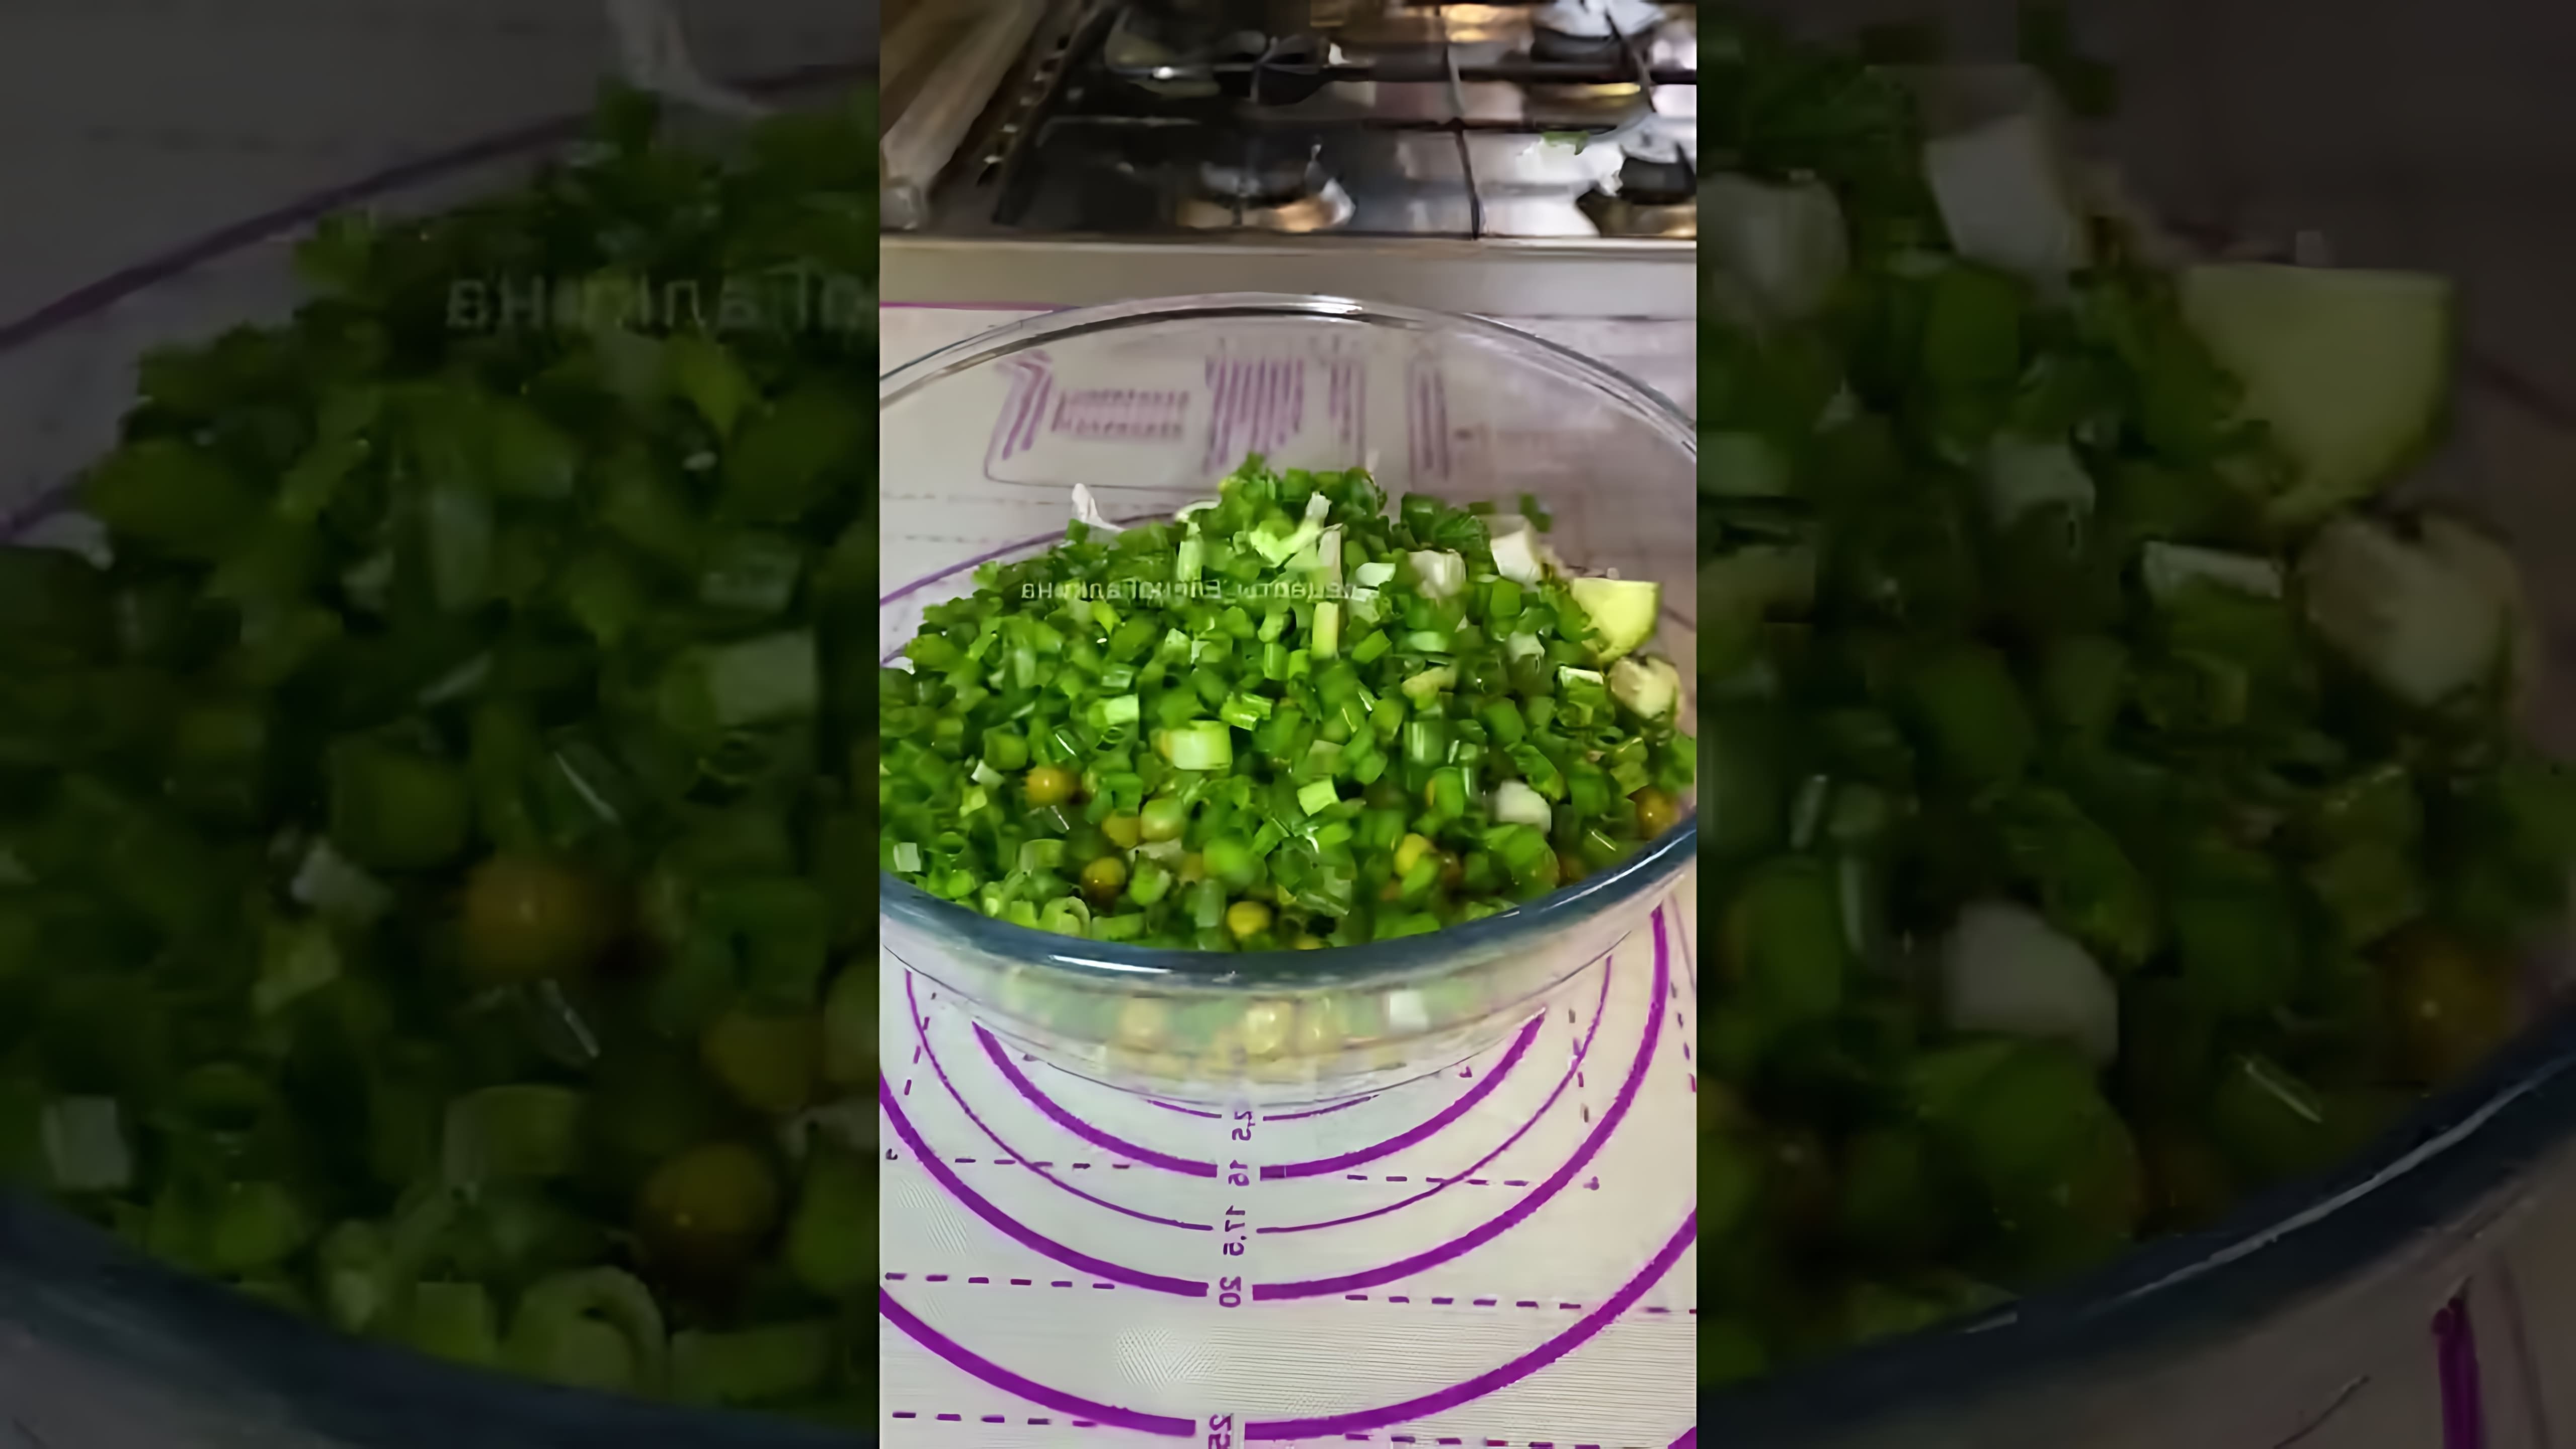 Салат из простых ингредиентов - это видео-ролик, который демонстрирует процесс приготовления вкусного и простого салата из доступных продуктов